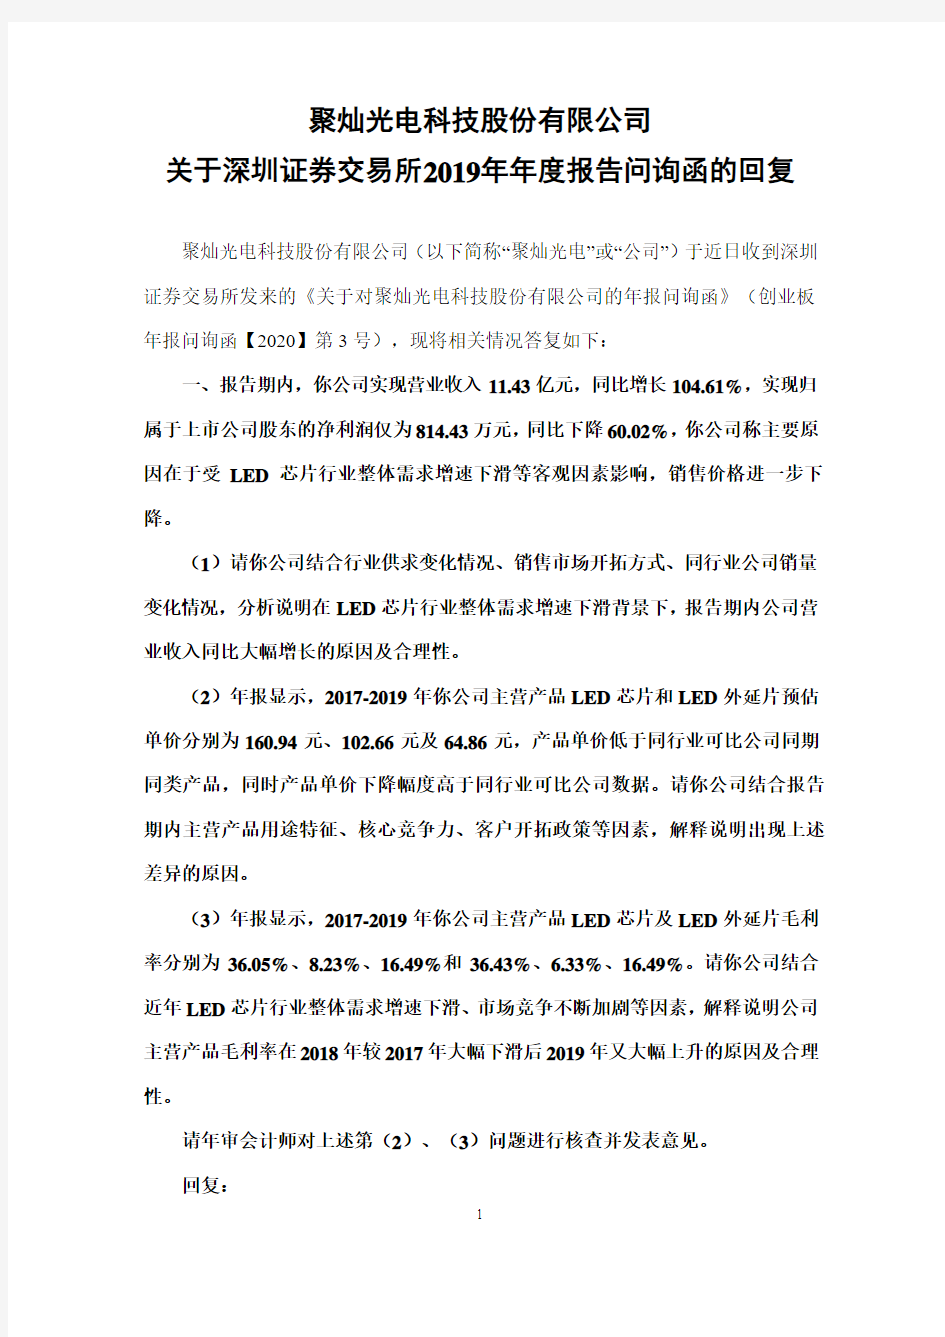 聚灿光电：关于深圳证券交易所2019年年度报告问询函的回复